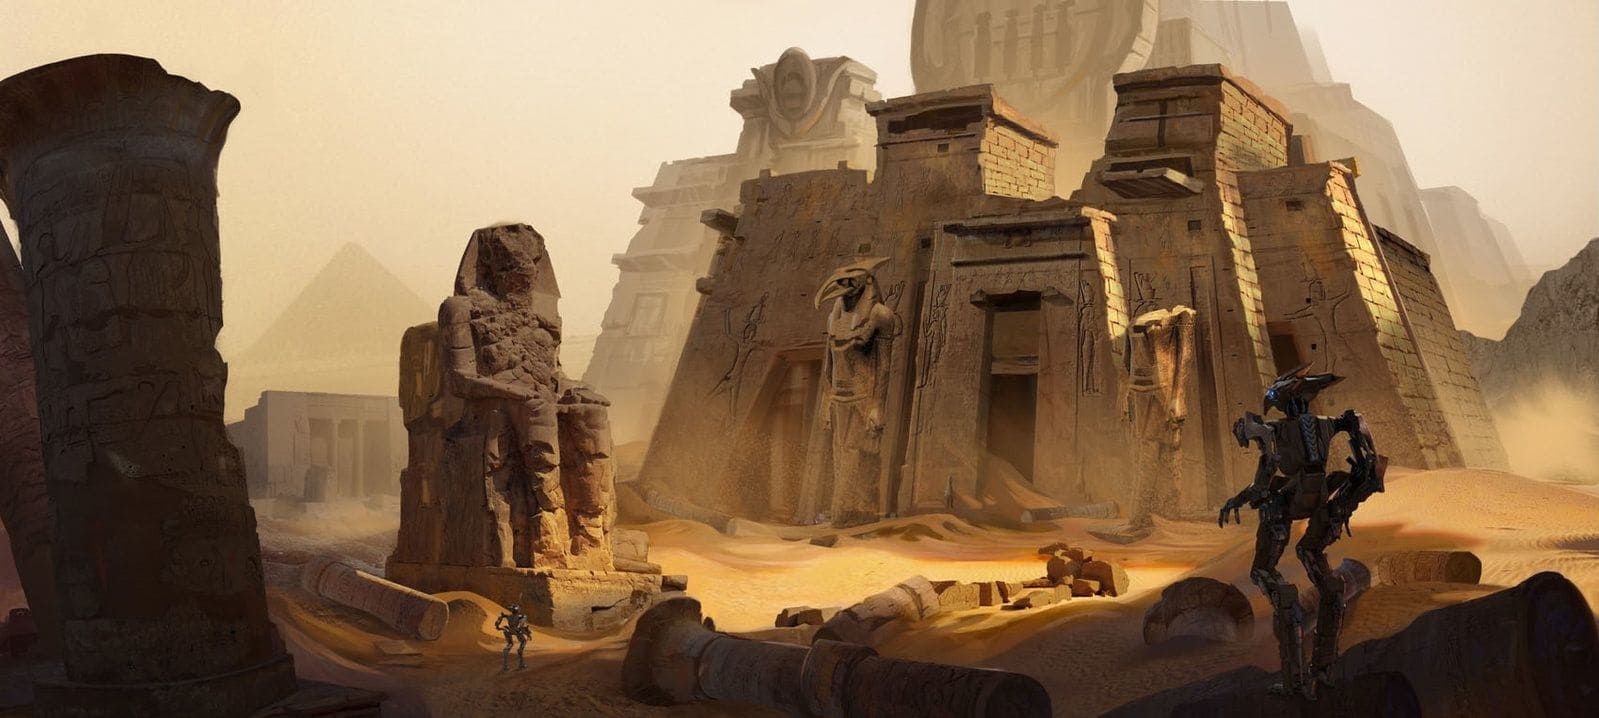 Храмы Египта были построены до нынешней человеческой цивилизации